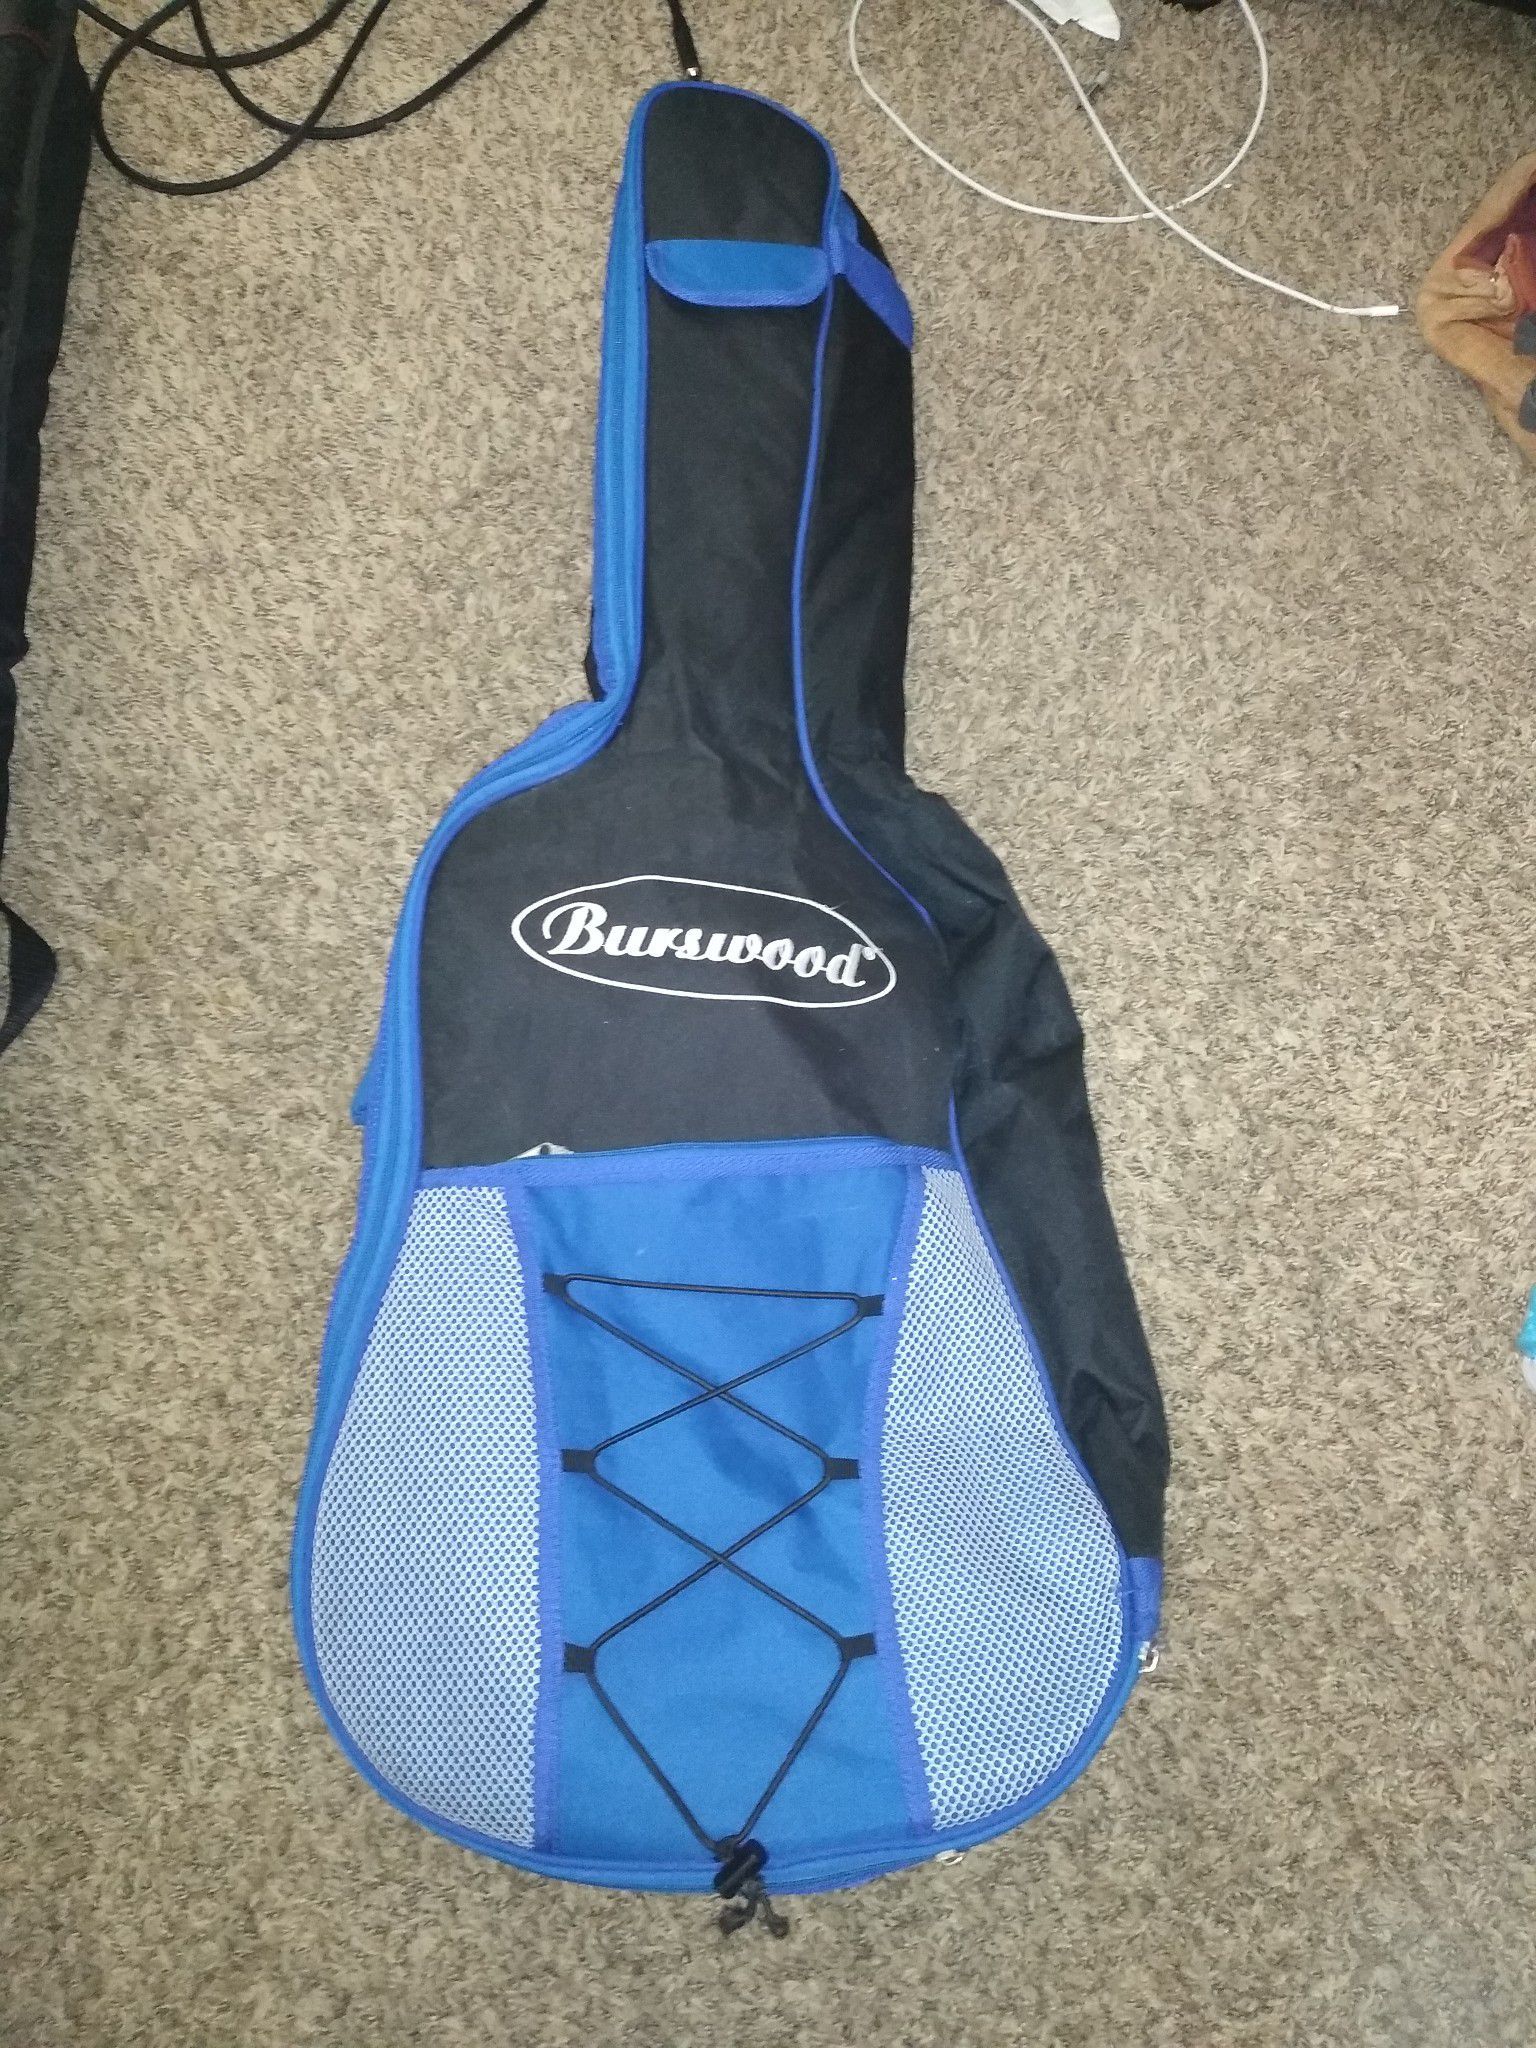 Acoustic guitar bag